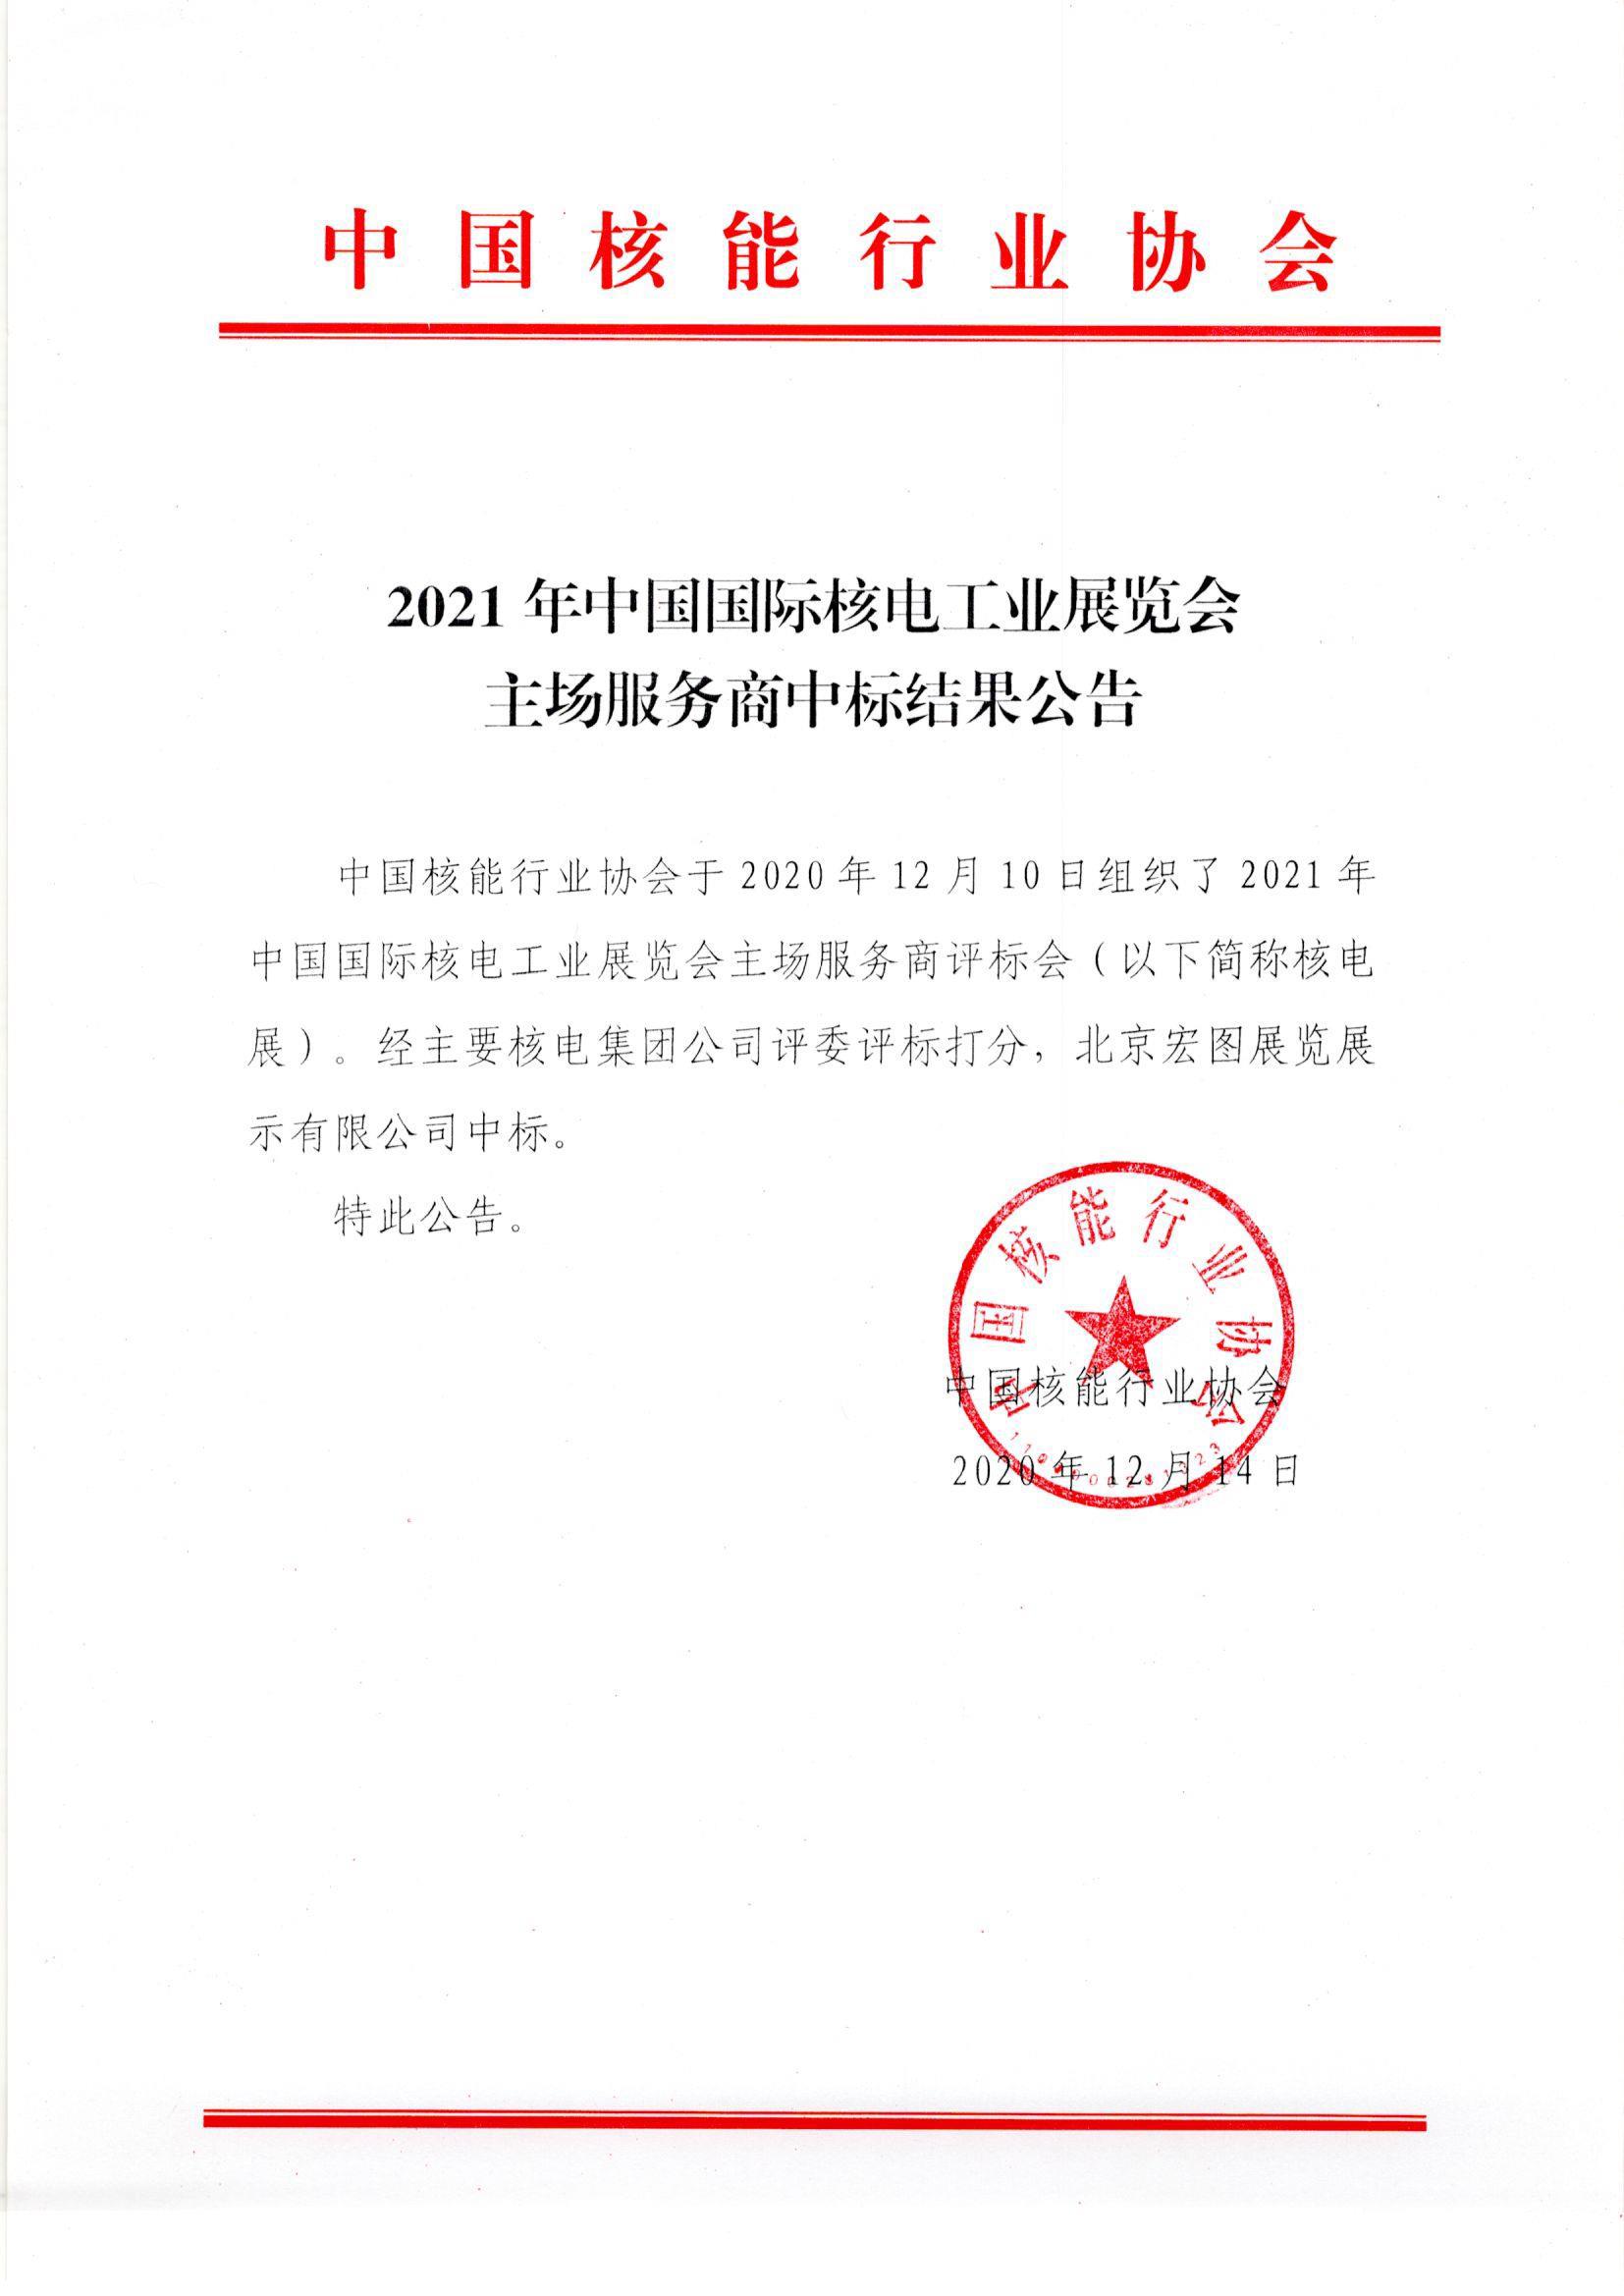 2021年中国国际核电工业展览会主场服务商中标结果公告1_1.jpg